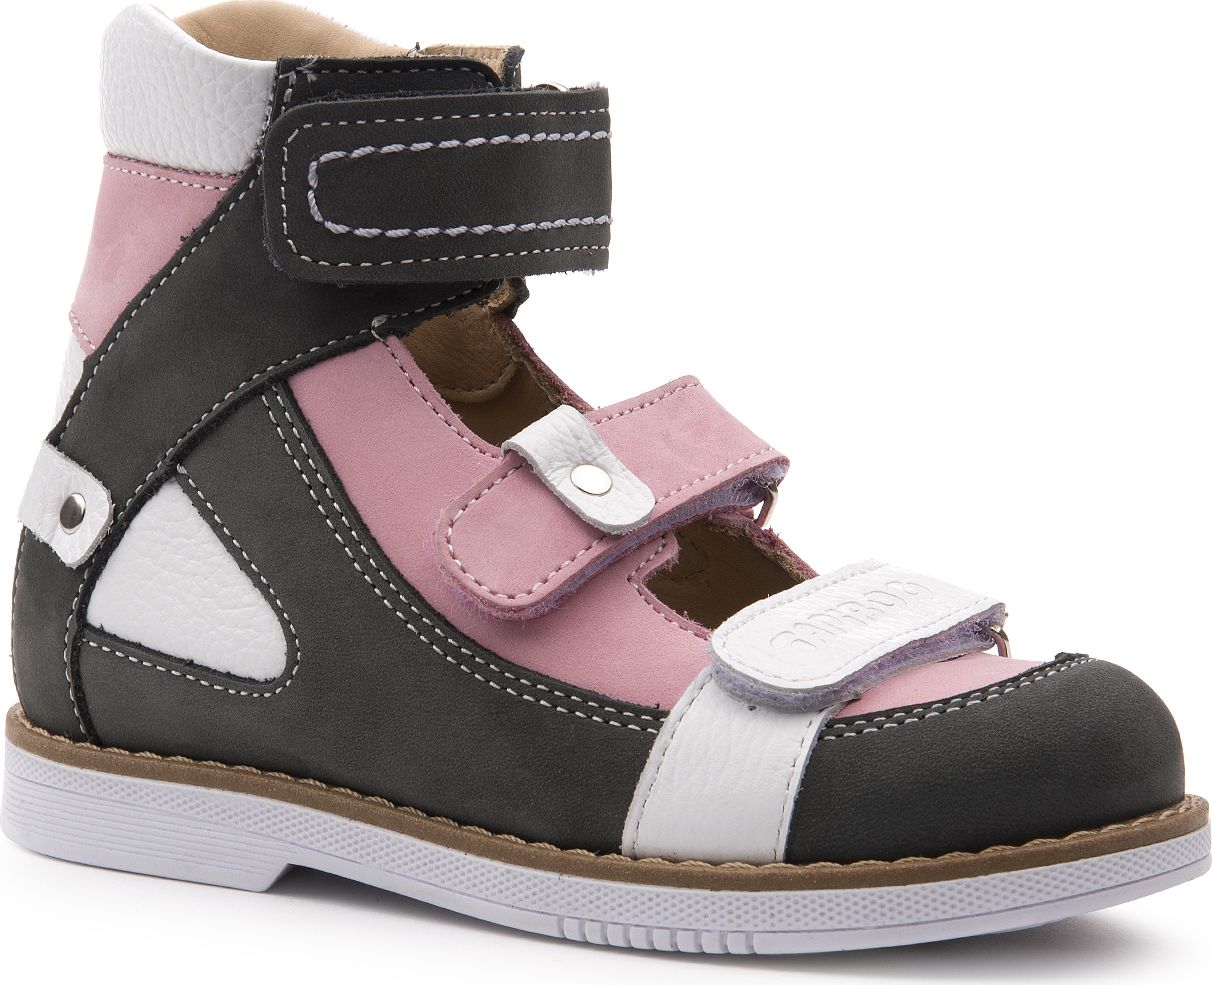 Туфли для девочки Tapiboo Лилия, цвет: розовый. FT-25011.23-OL05O.01. Размер 27